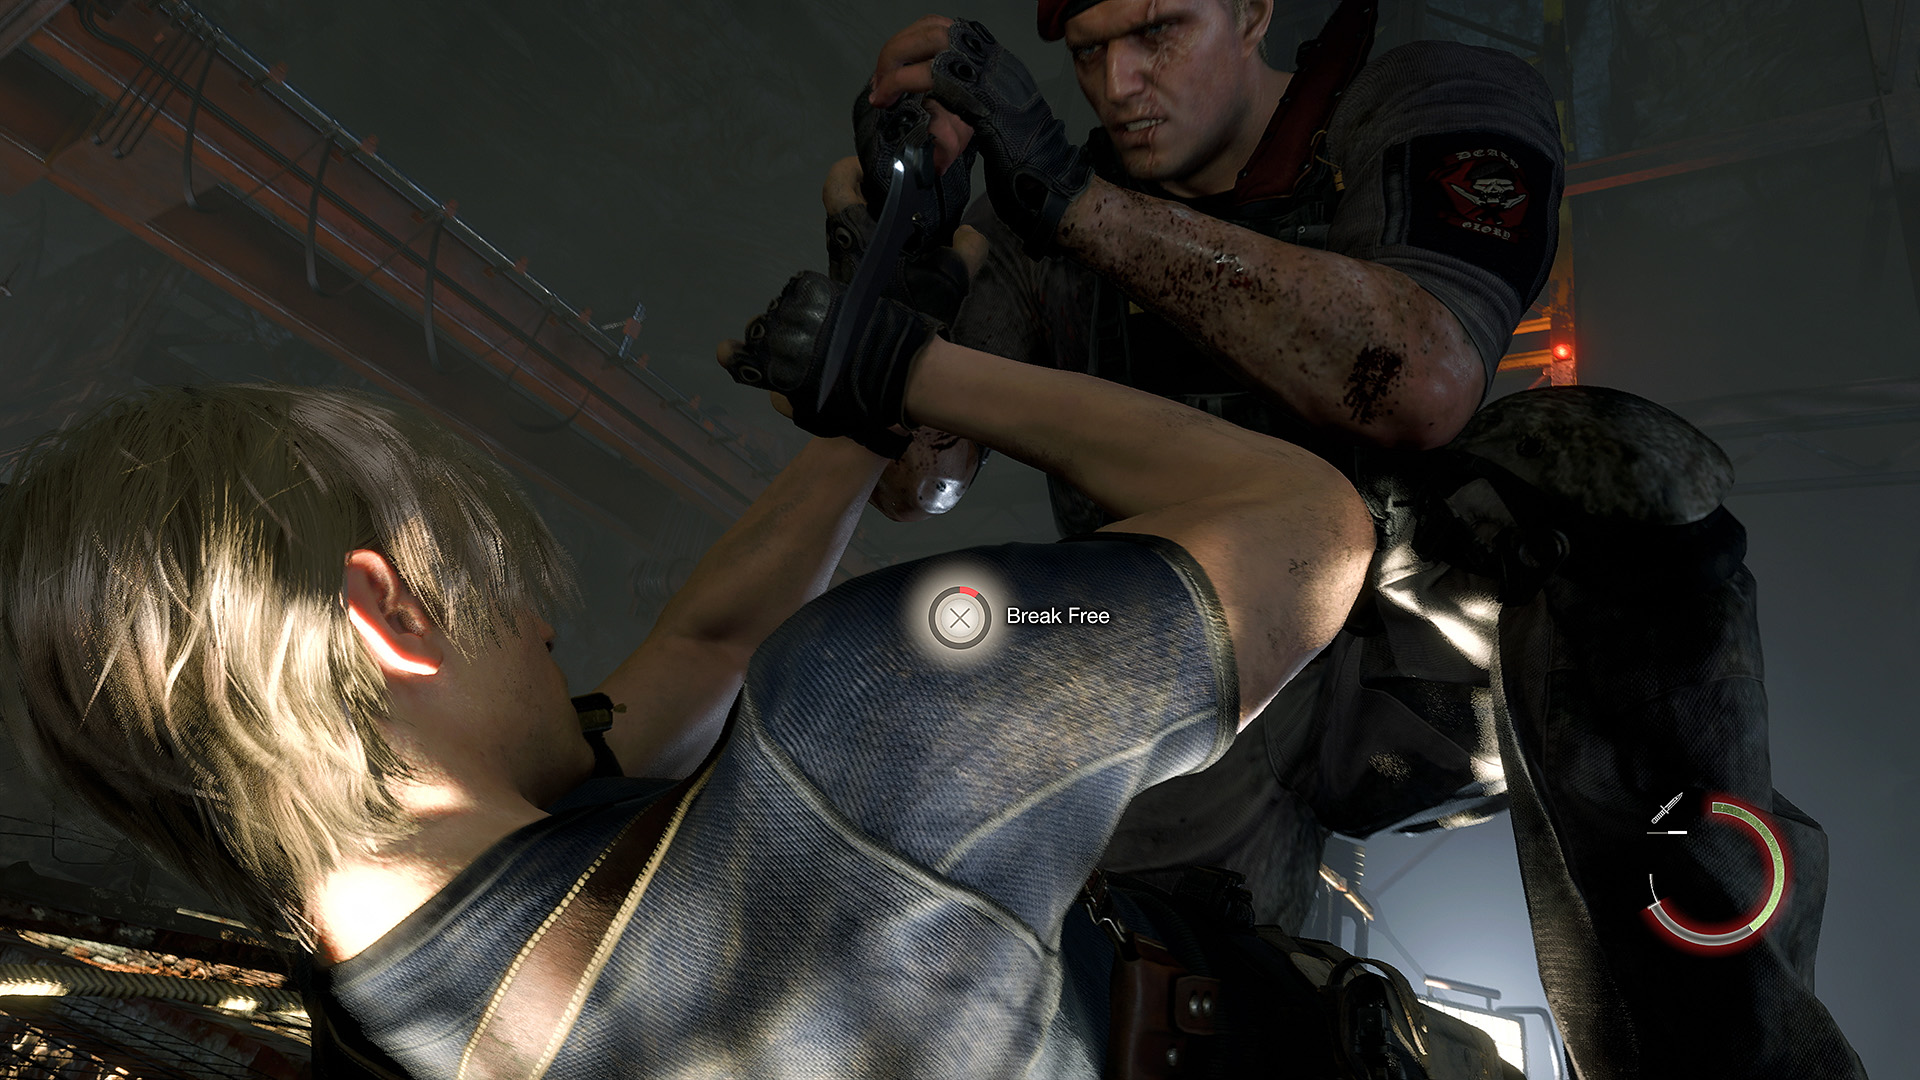 Cópias de Resident Evil 4 chegam às lojas antes da hora